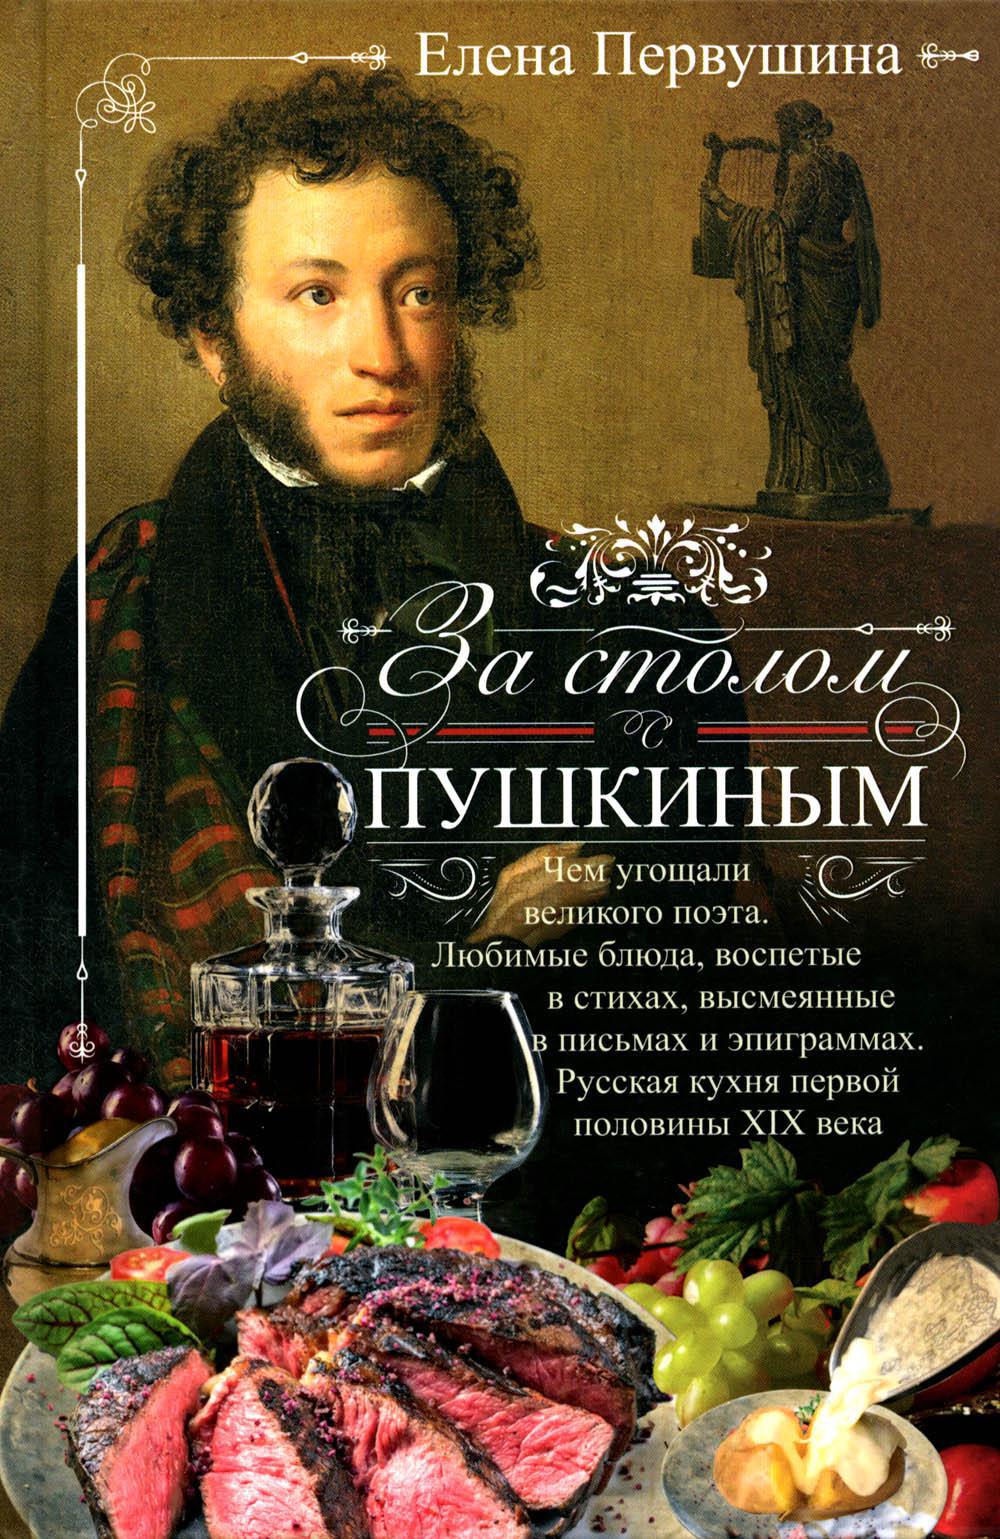 За столом с Пушкиным. Чем угощали великого поэта. Любимые блюда, воспетые в стихах, высмеянные в письмах и эпиграммах